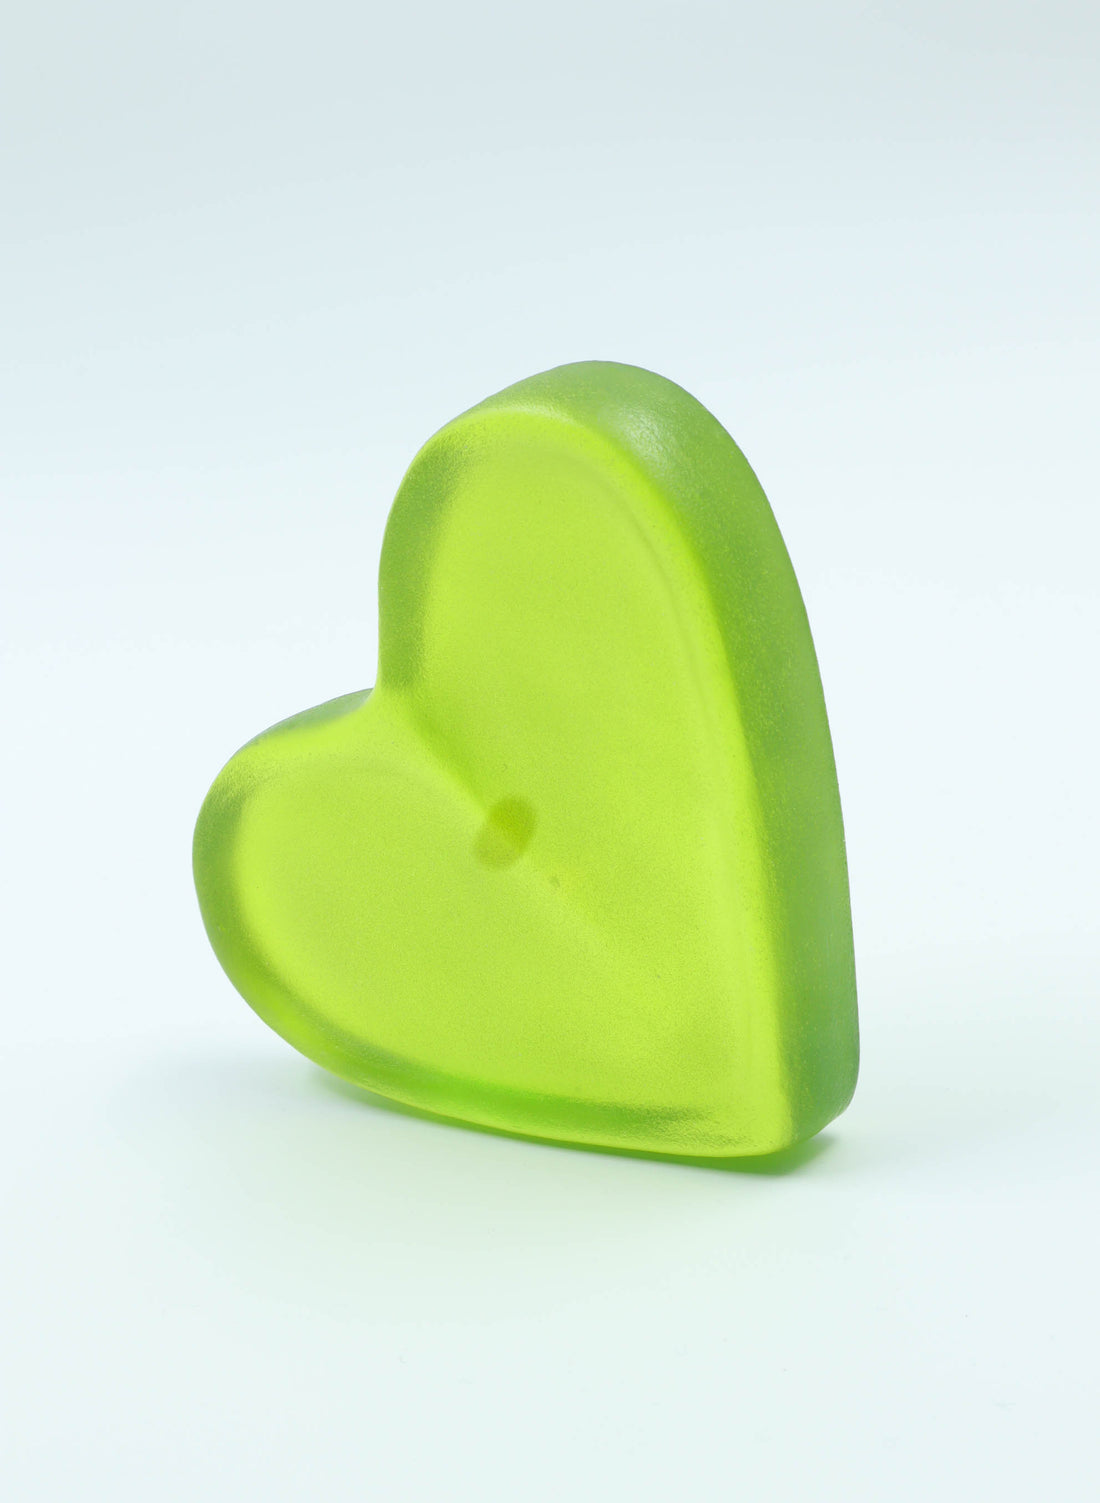 Jumbo Glo Heart - Lime